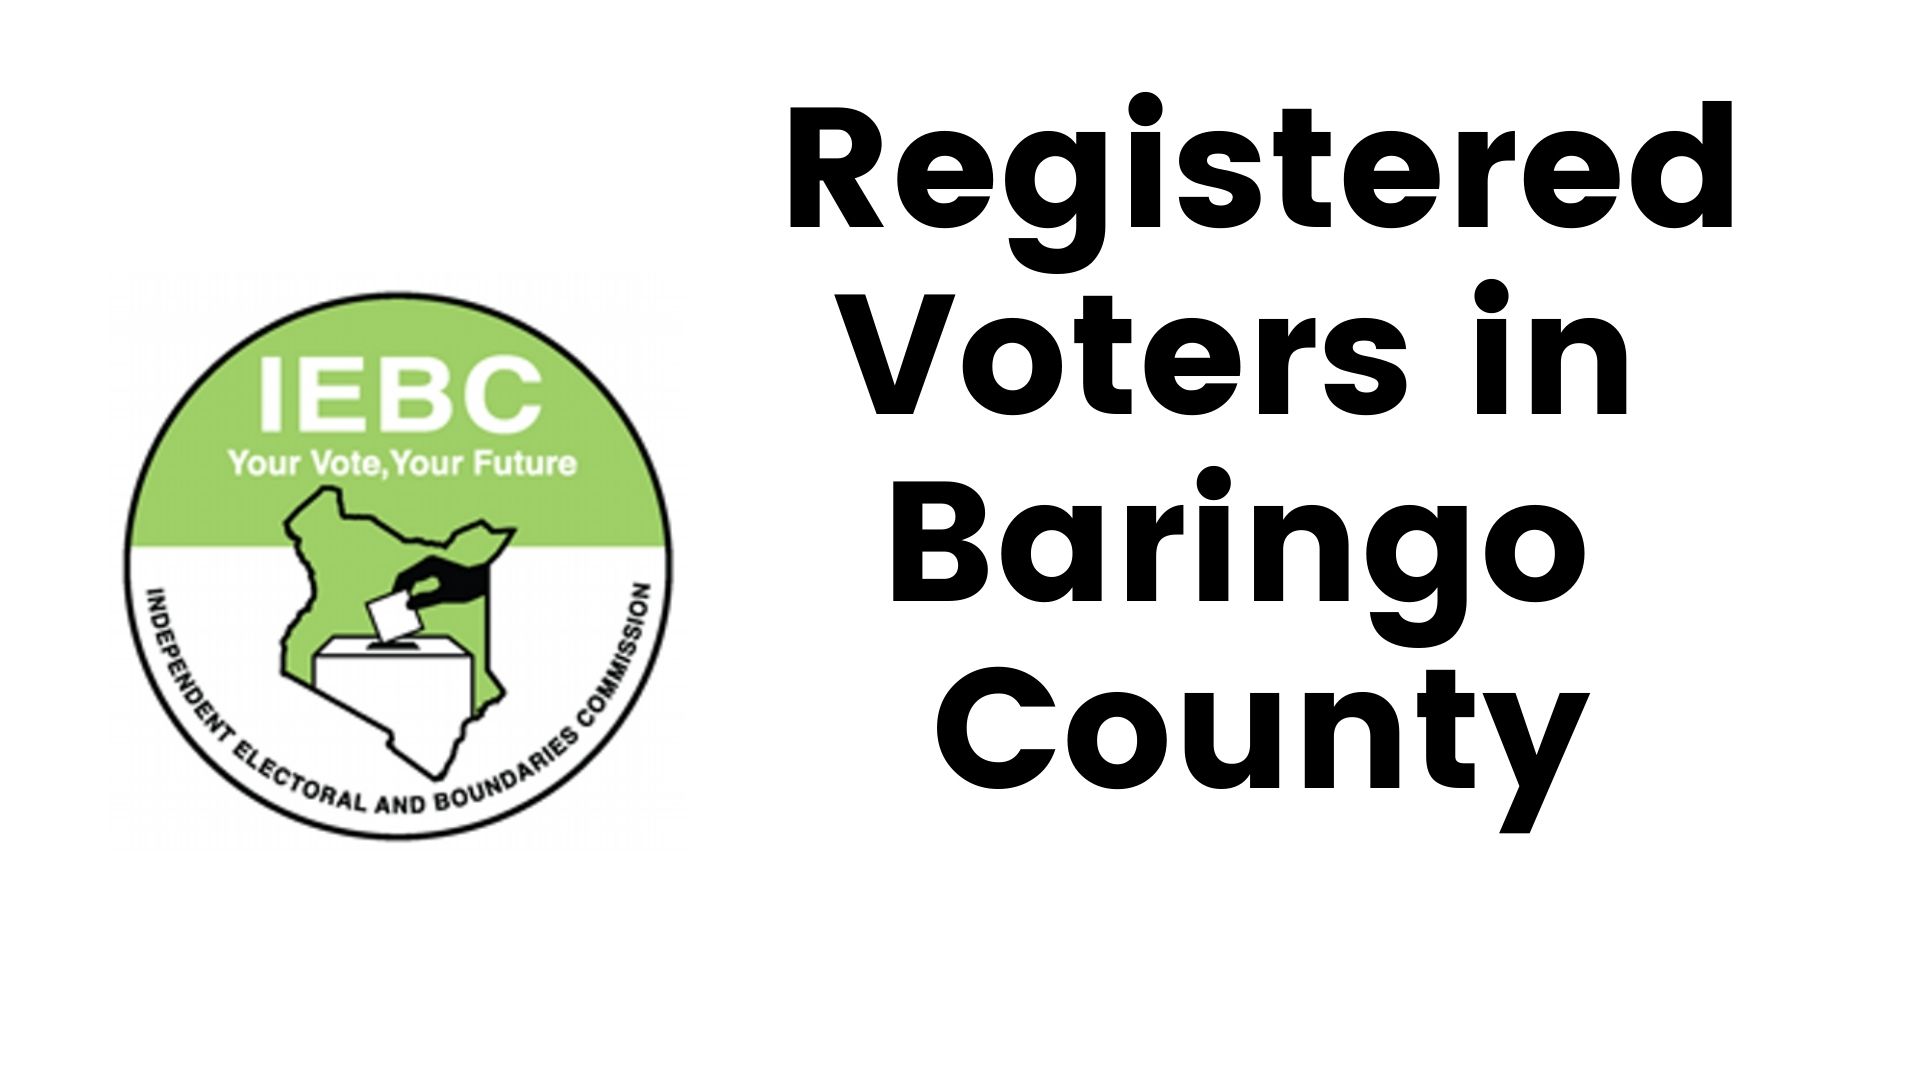 IEBC Baringo County Registered Voters